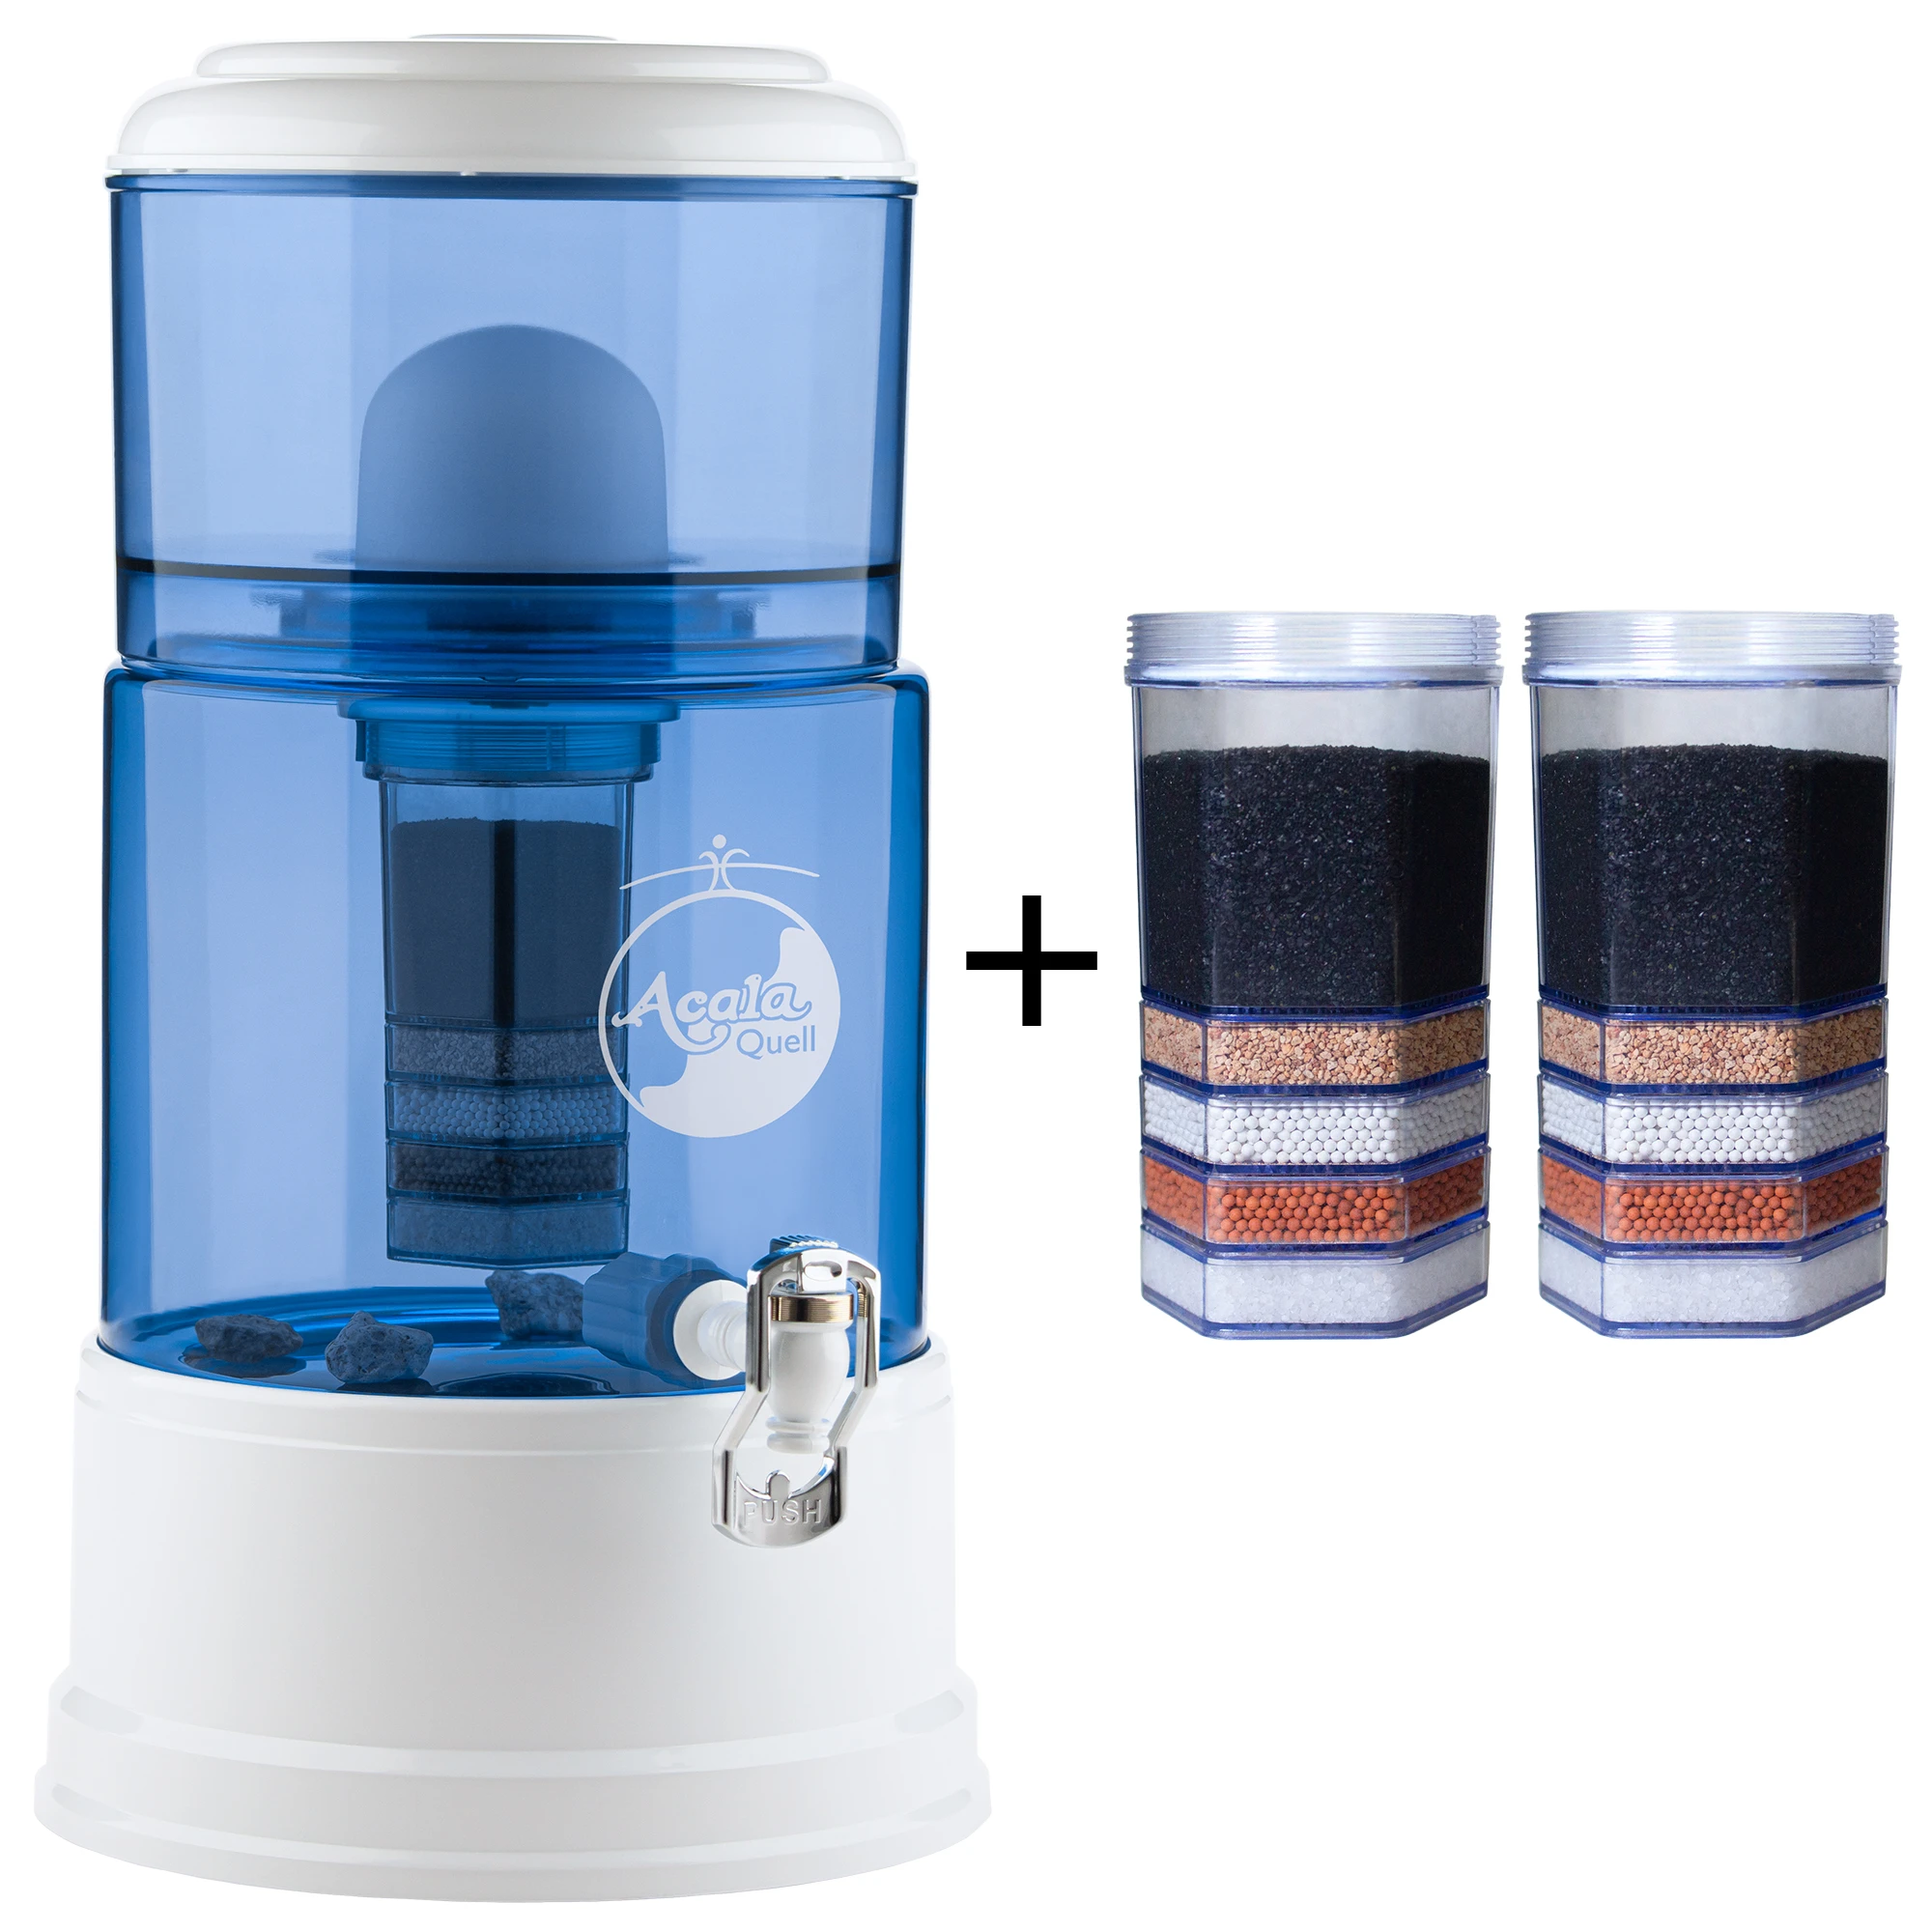 Zu sehen ist der Acala Wasserfilter Smart in blau-weiß inklusive einer Filterkartusche und einem Keramikfilter. Zusätzlich sieht man zwei Filterkartuschen. Das Bild zeigt das Einsteigerpaket für ein Jahr.